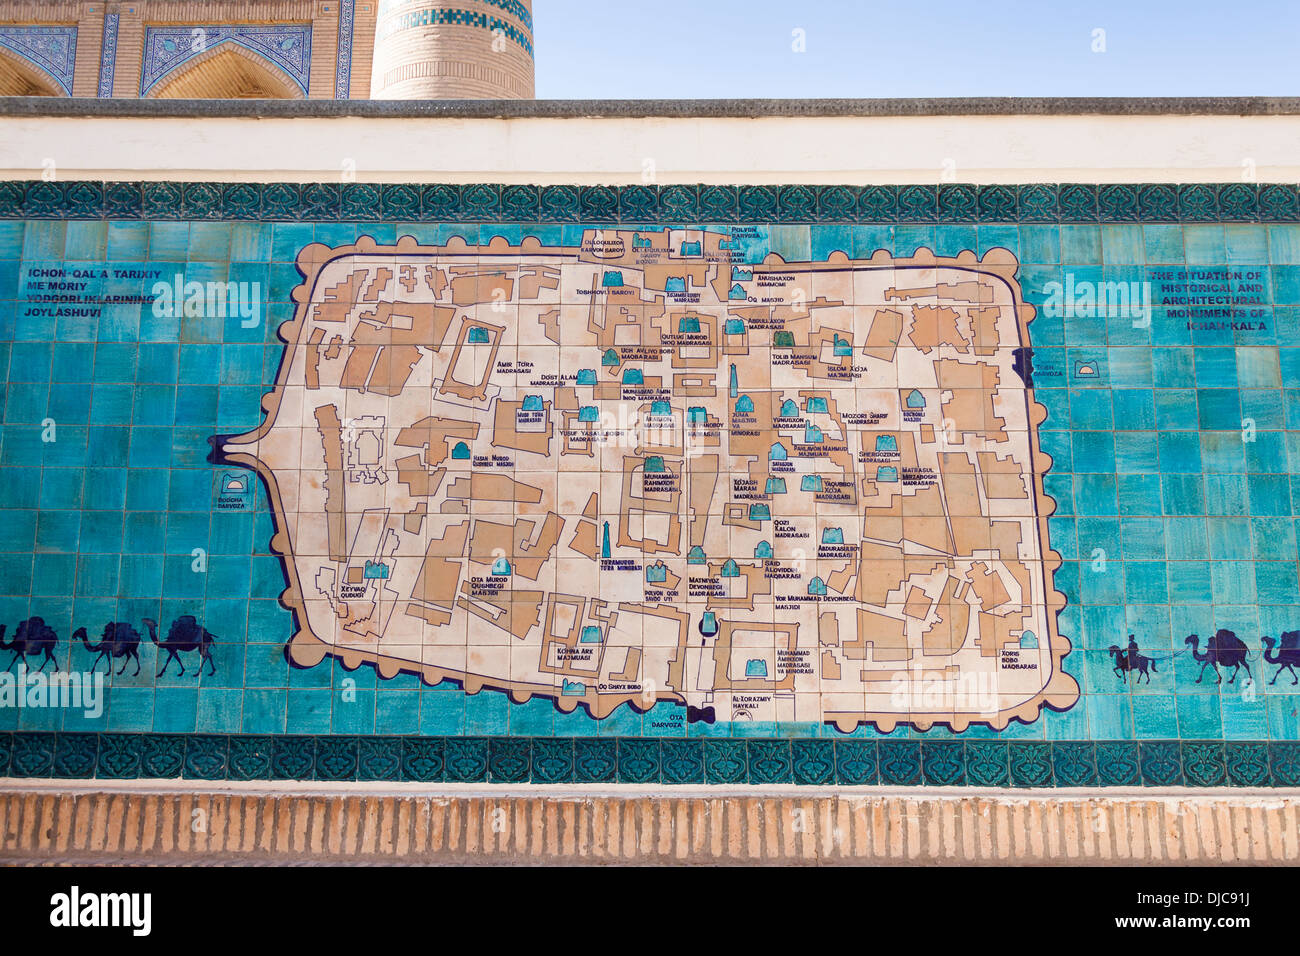 Sol carrelé site de Khiva, Khiva Ichan Kala, Ouzbékistan, Banque D'Images